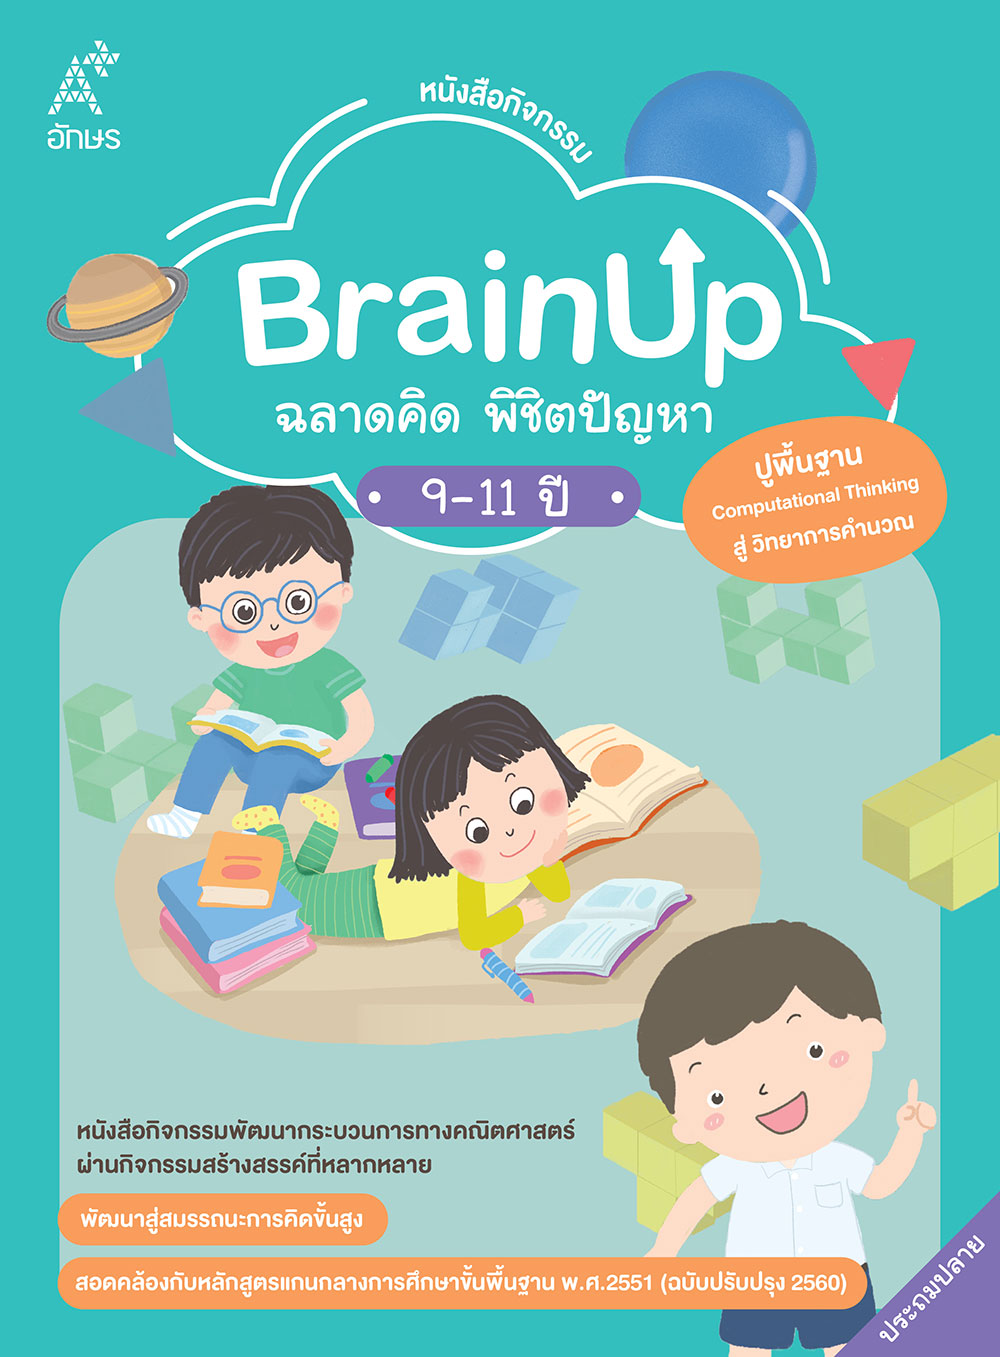 หนังสือกิจกรรม BrainUp ฉลาดคิด พิชิตปัญหา อายุ 9-11 ปี